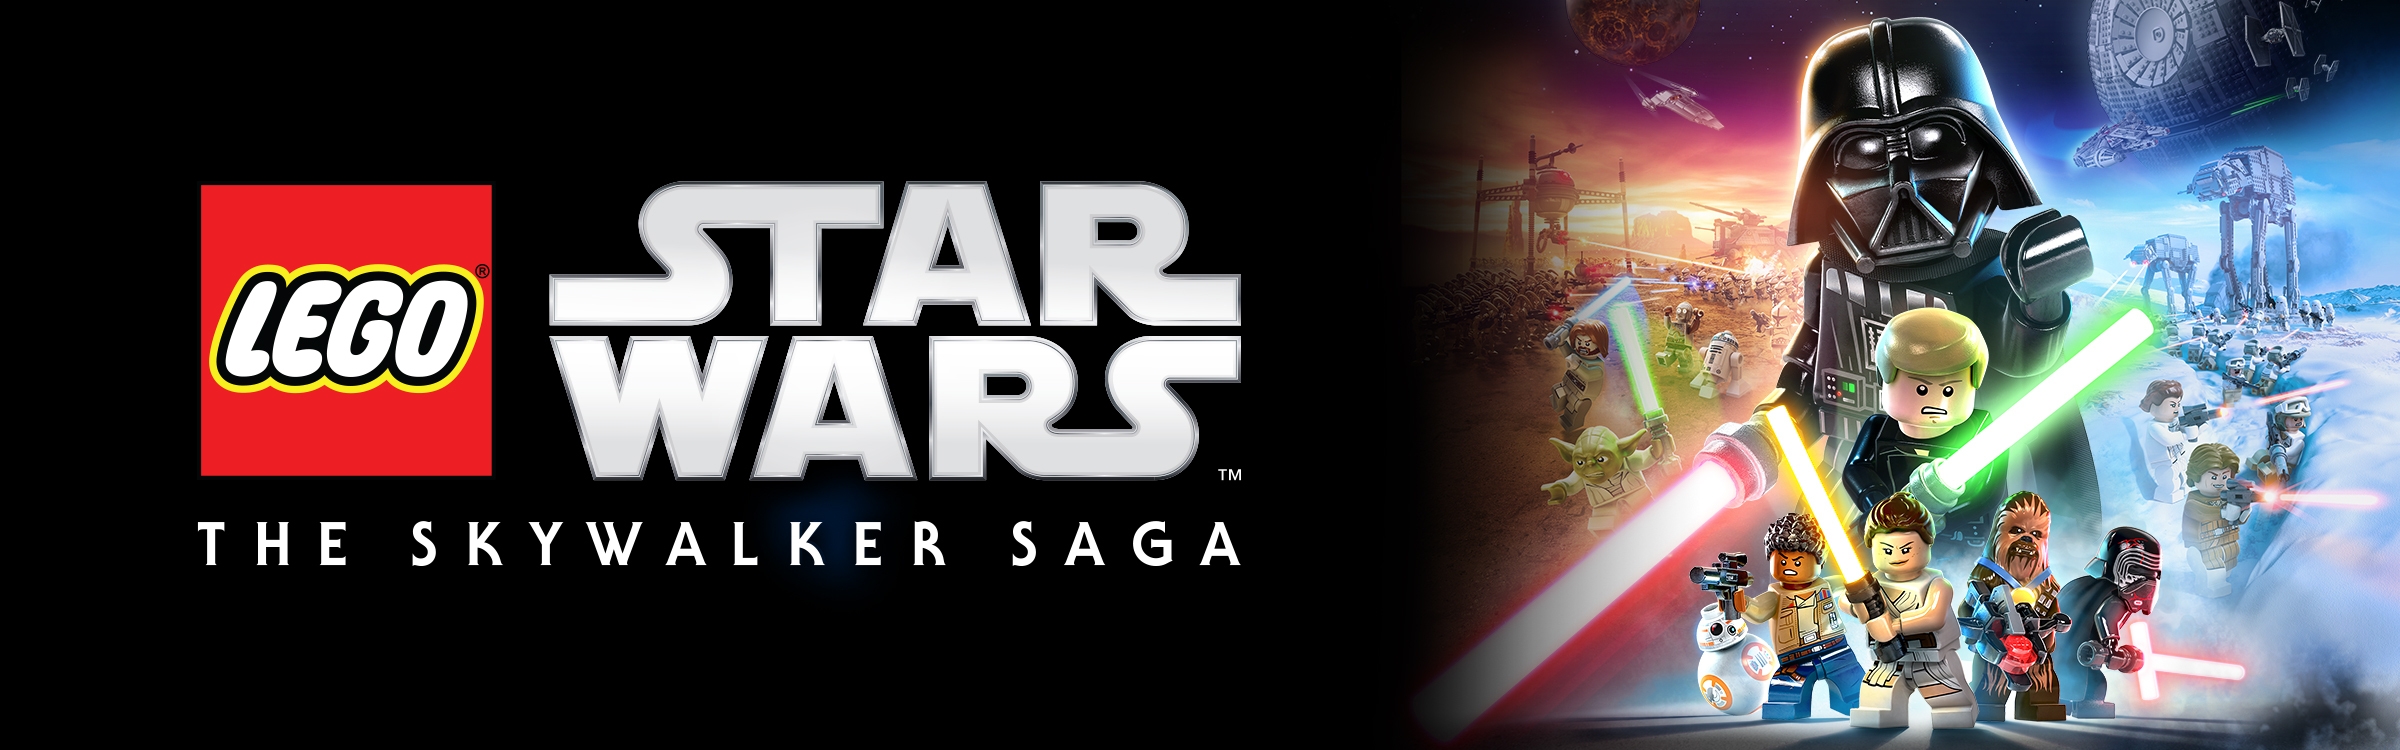 saga star wars